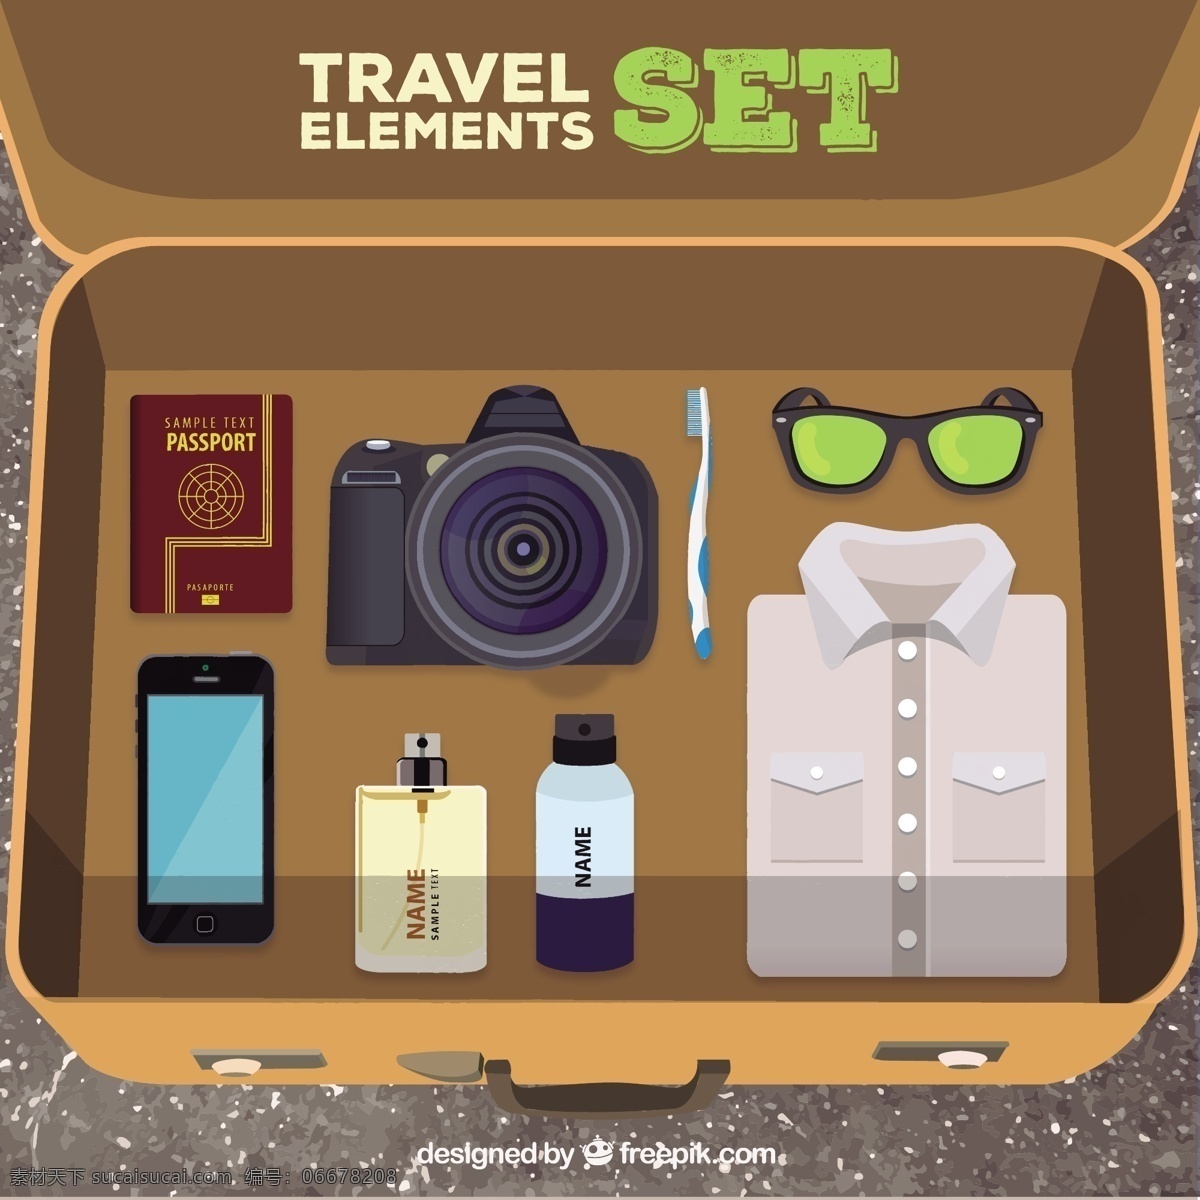 手绘旅游要素 旅游 相机 电话 手机 服装 护照 手提箱 行李 观光 设置 旅行